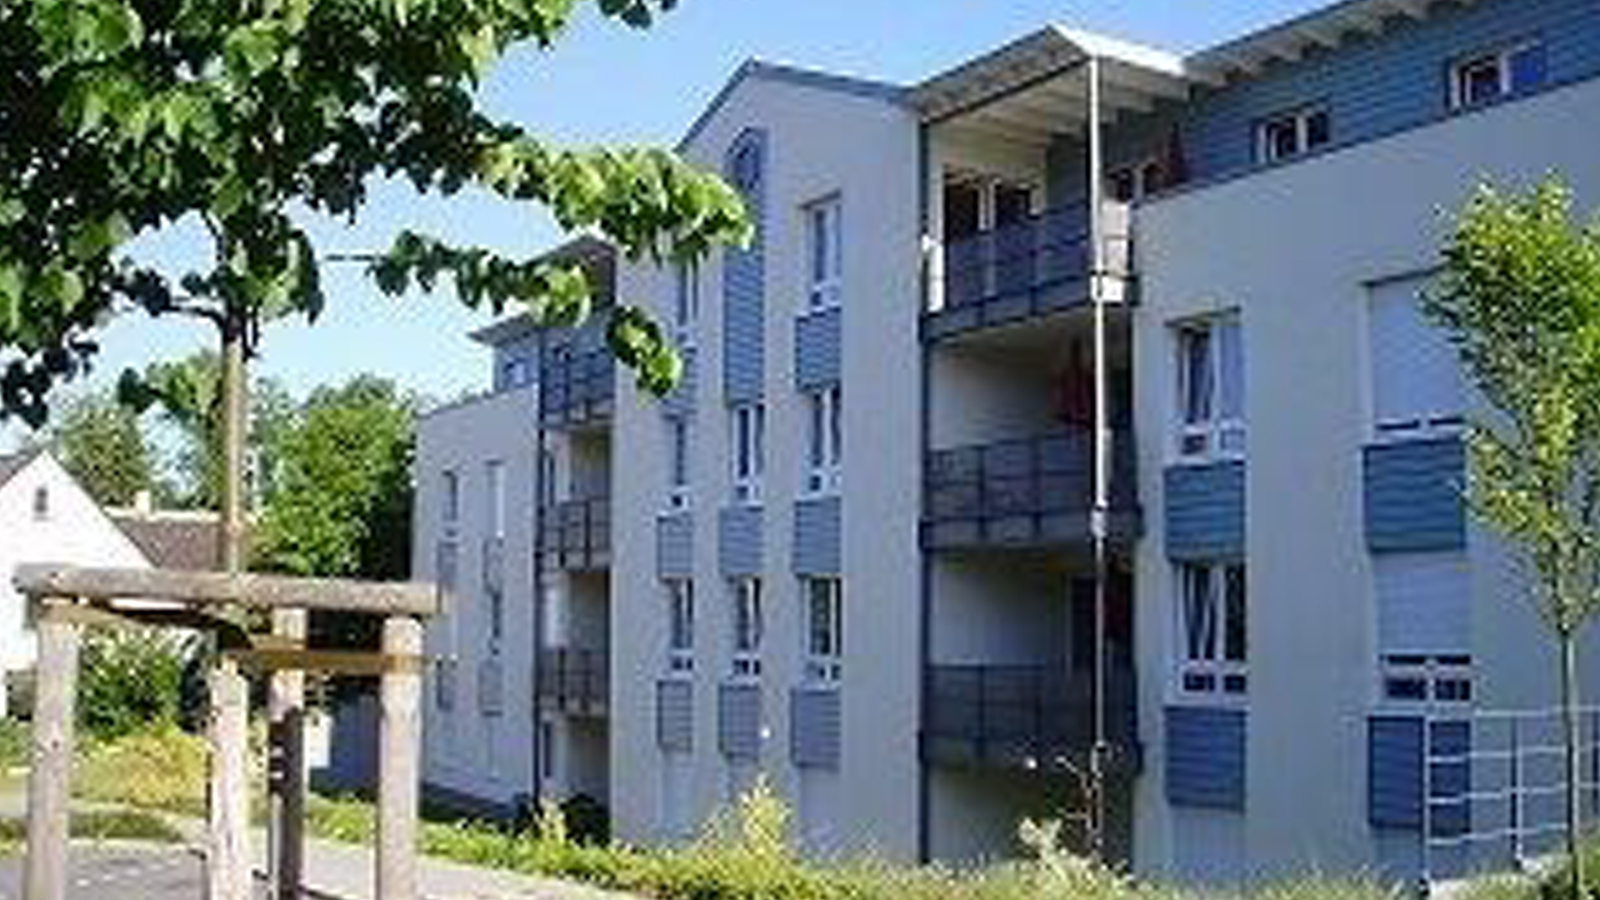 Josefhaus in Mülheim an der Ruhr